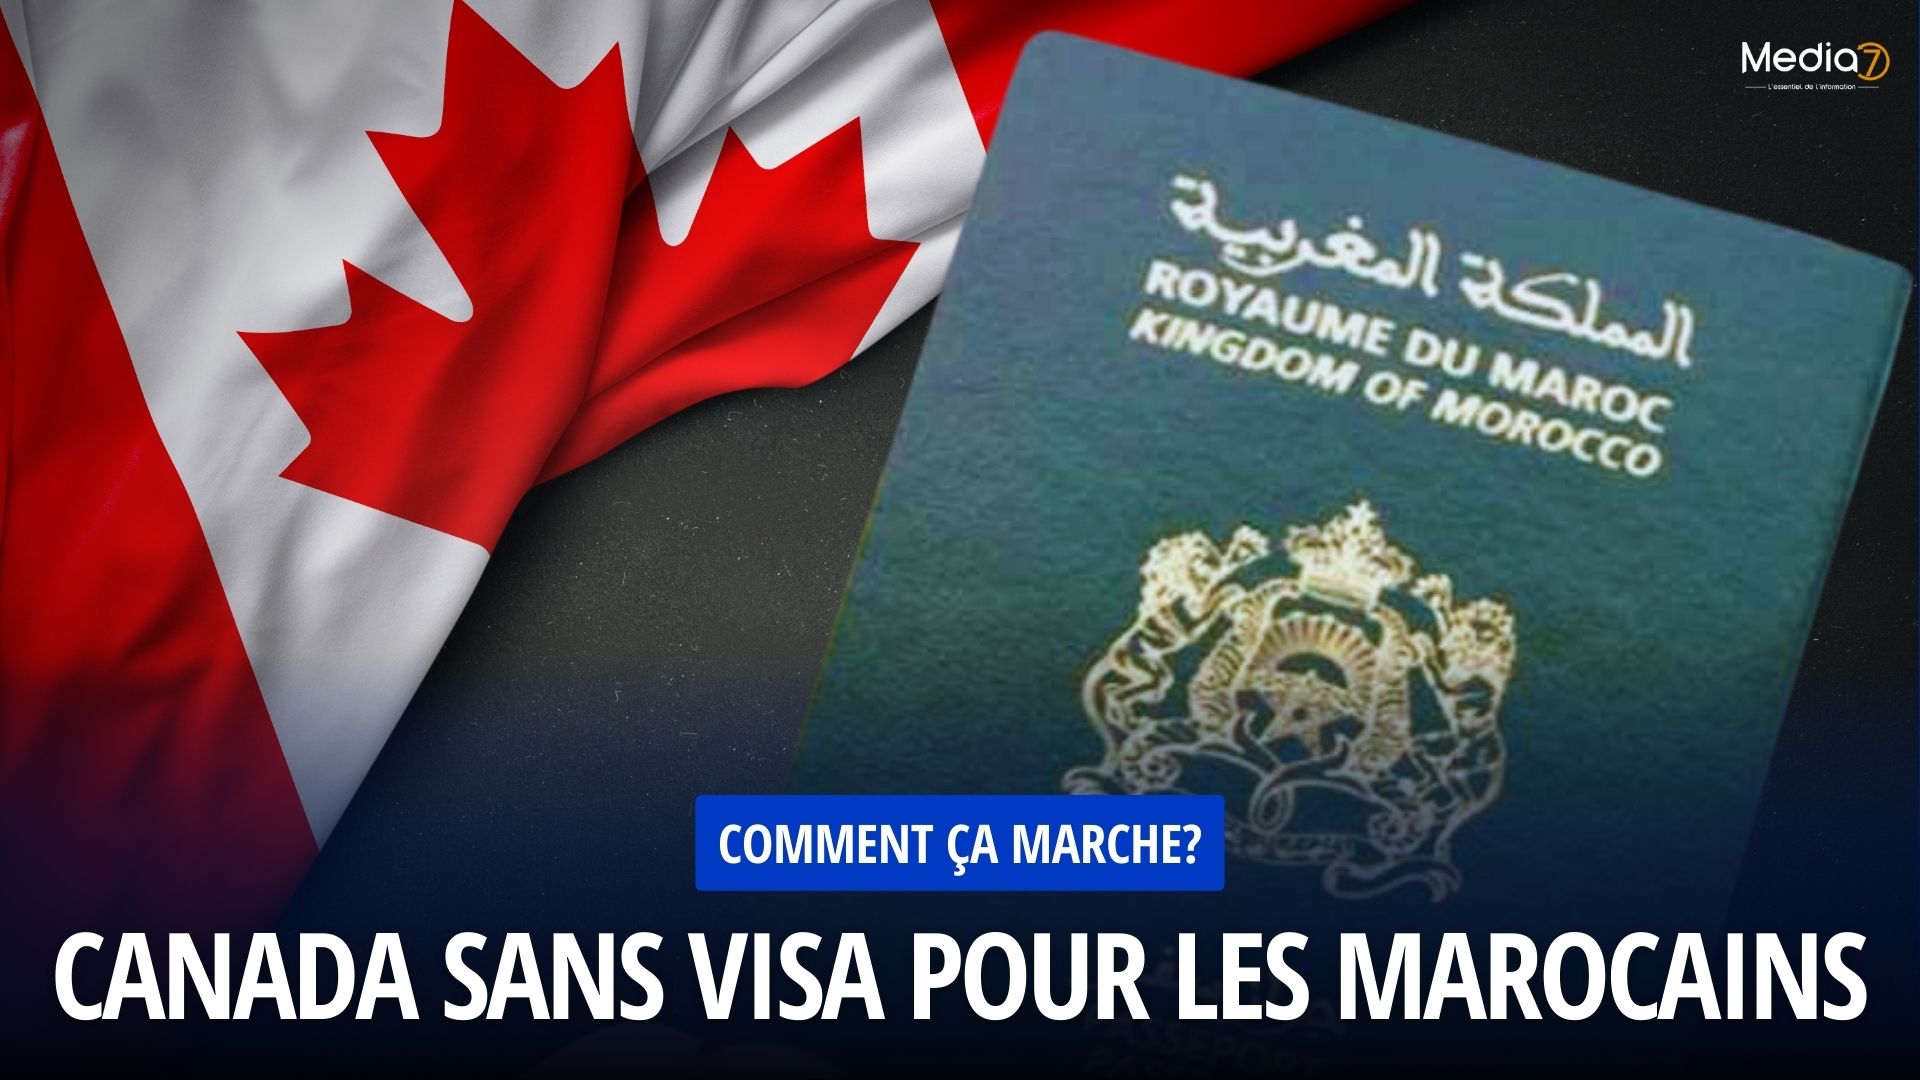 Canada sans Visa pour les Marocains: Comment ça marche?